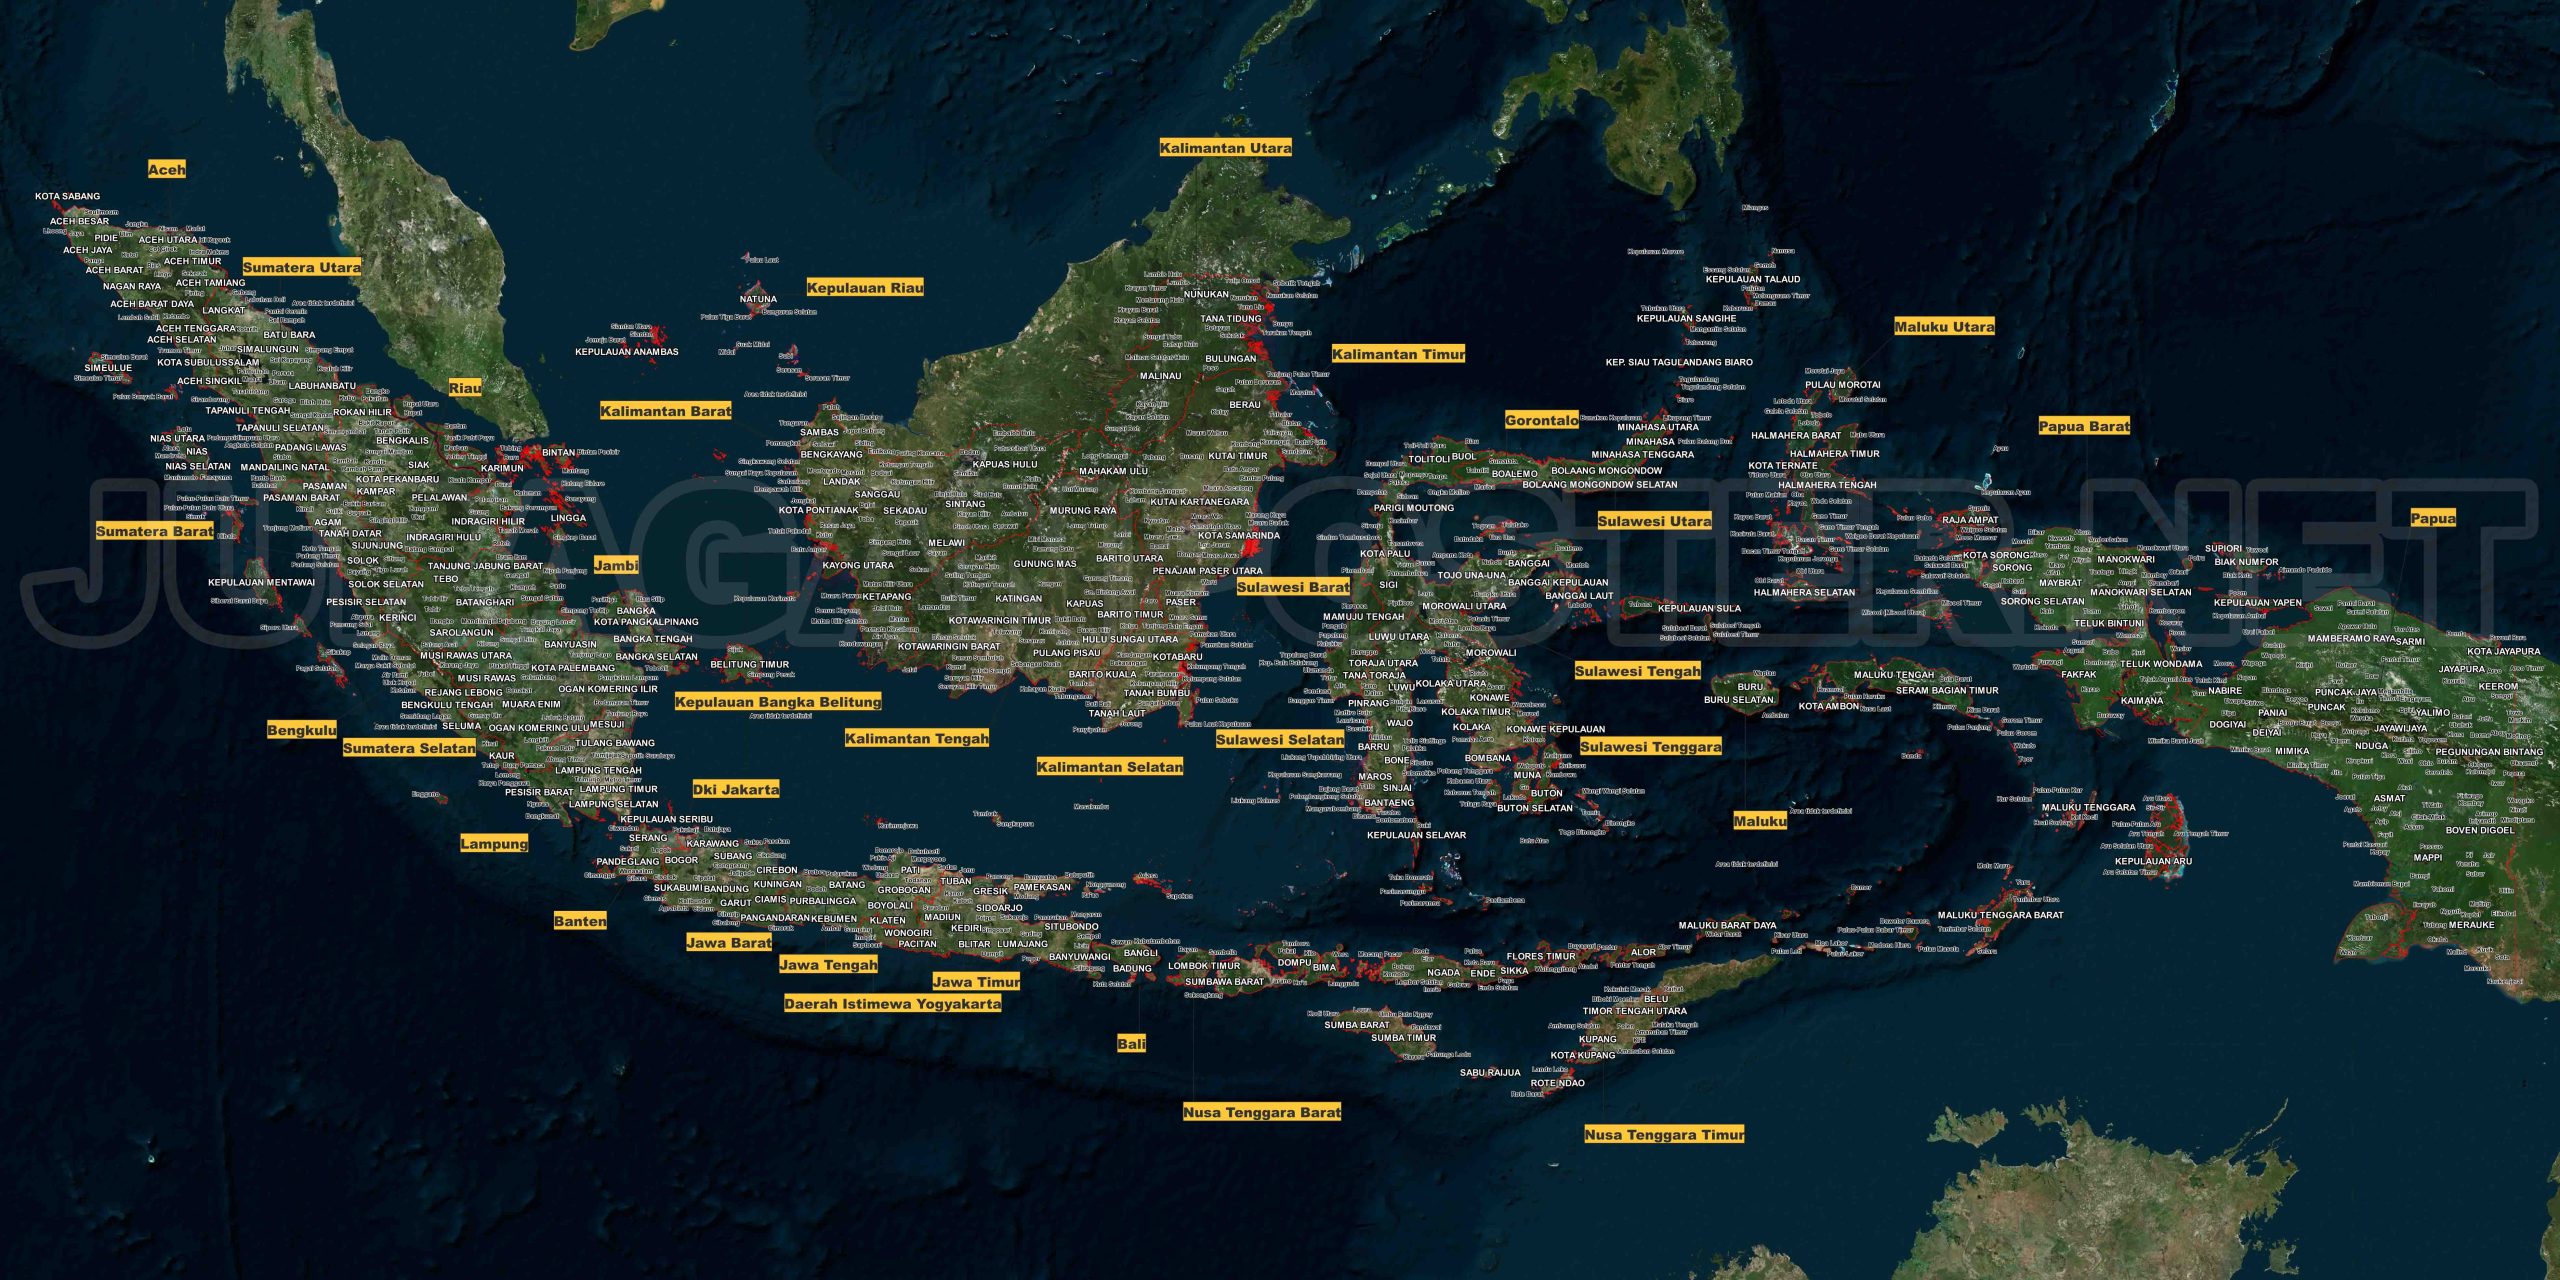 Lautan Indonesia Lengkap dalam Peta: Menjelajahi Kekayaan Bawah Air